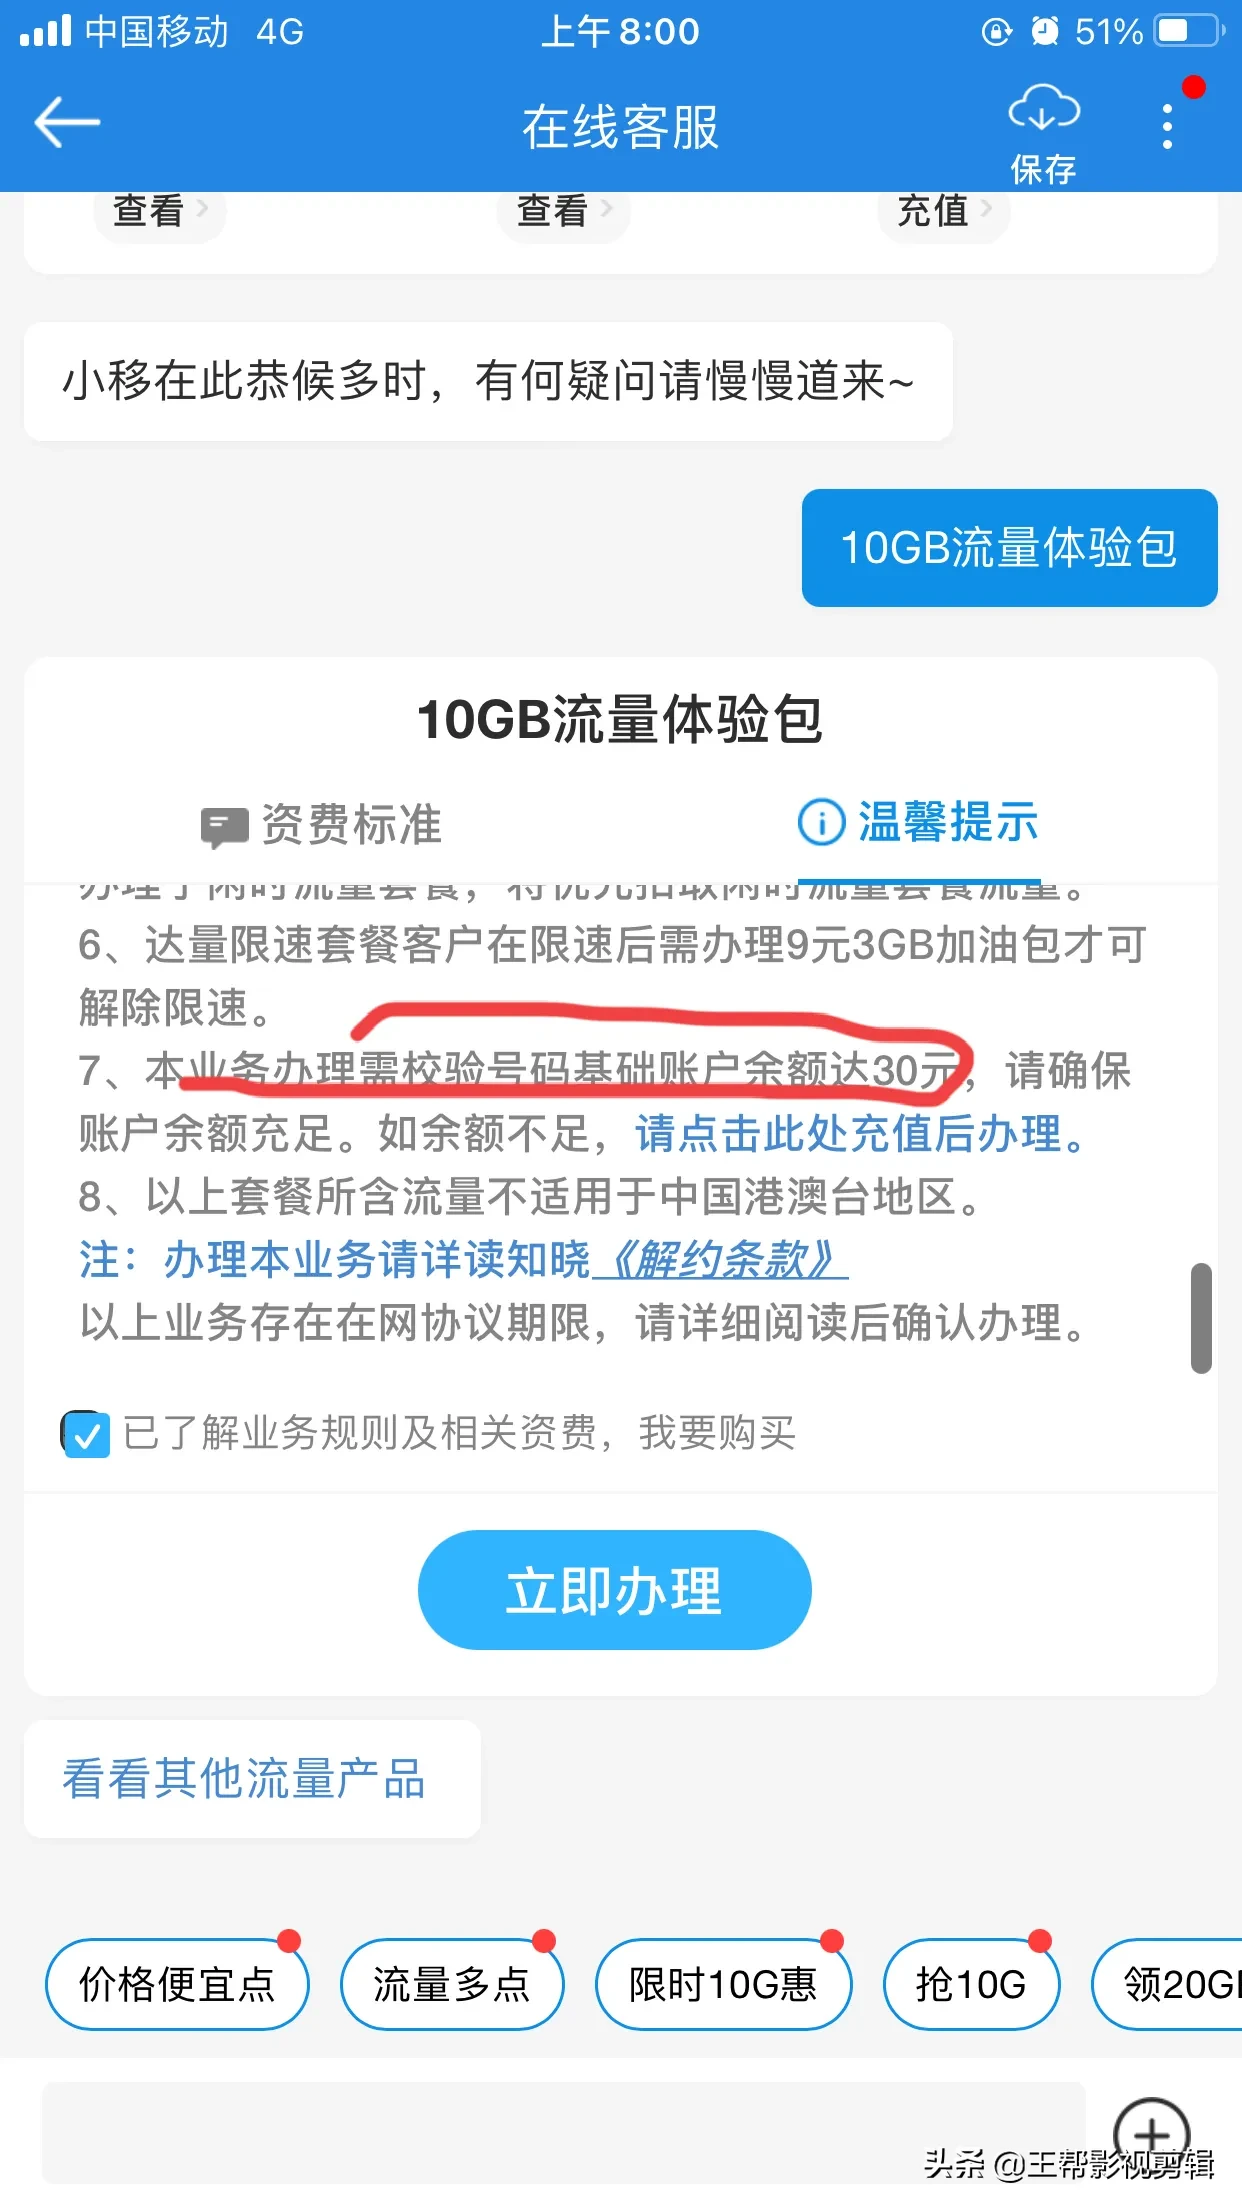 中国移动免费半年流量申请入口:5G流量包50GB/每月10GB